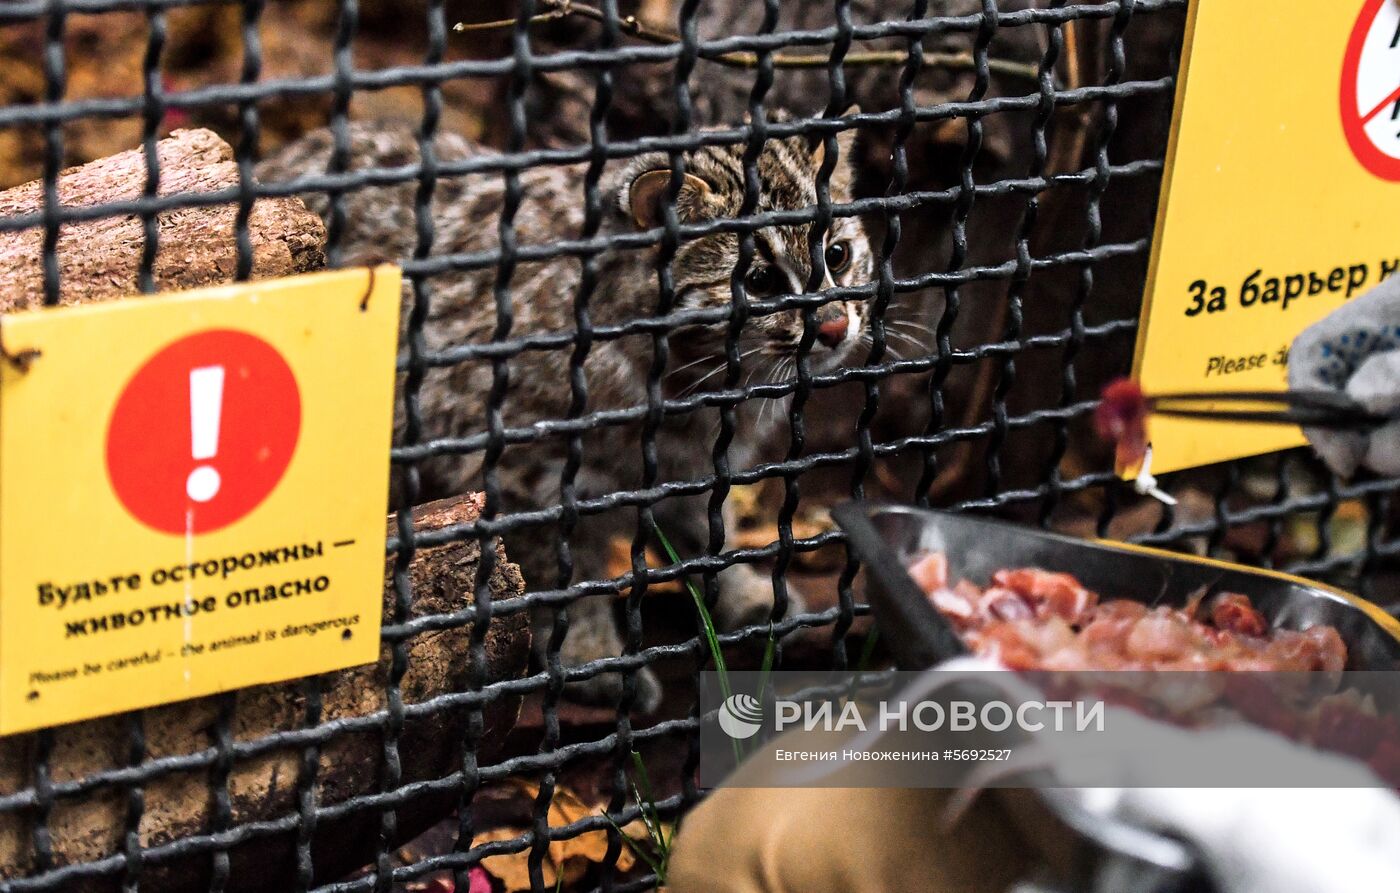 Амурский лесной кот в Московском зоопарке